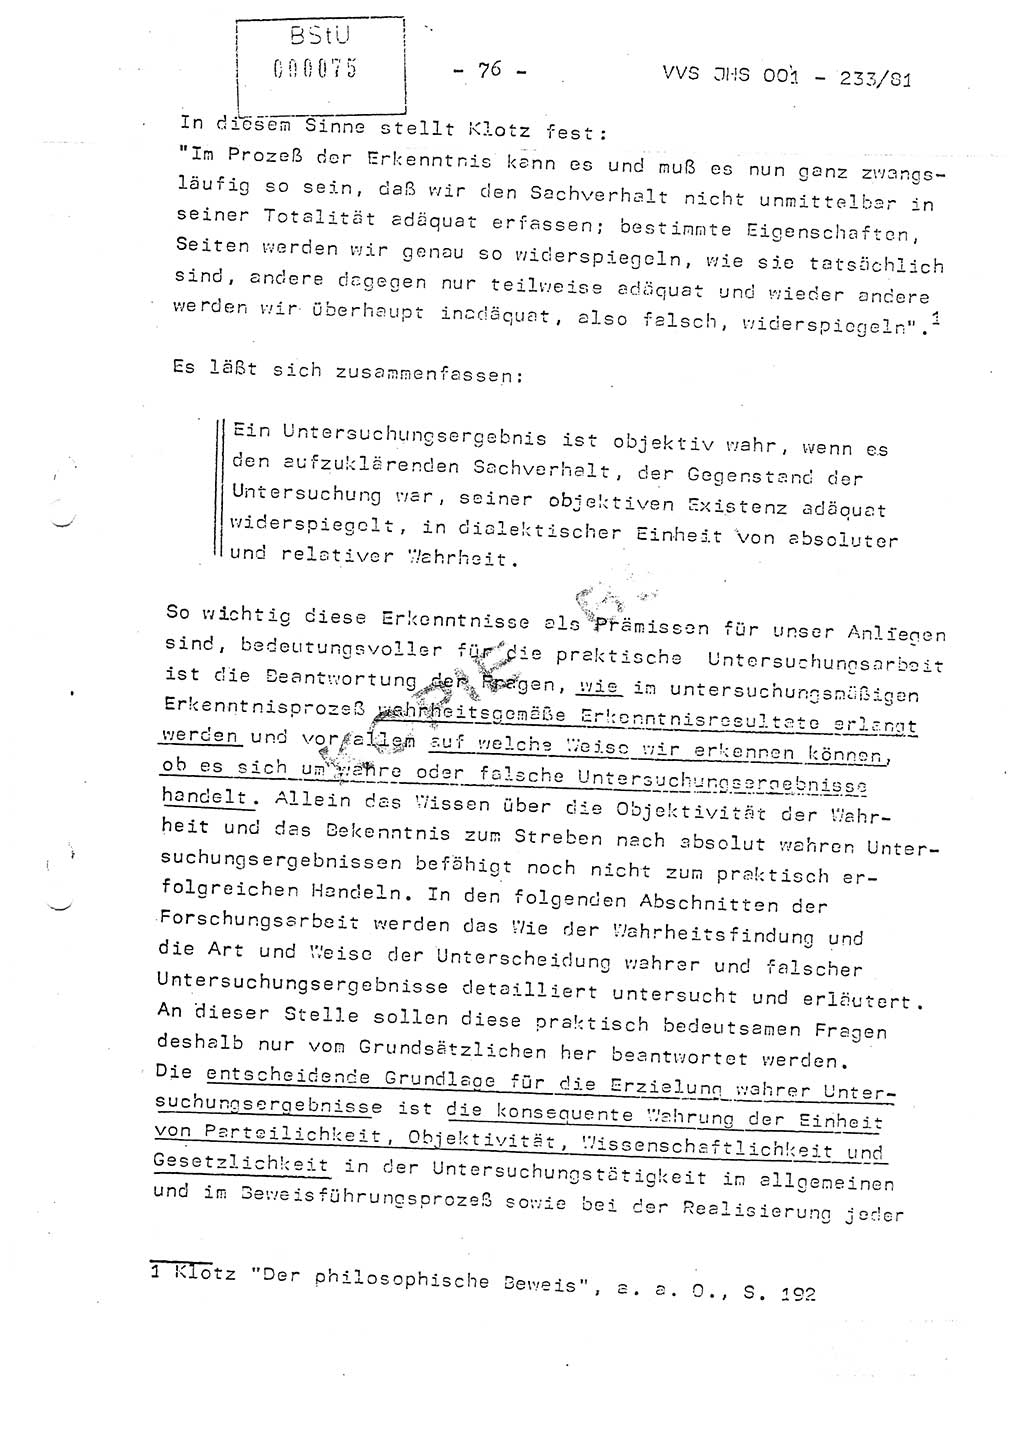 Dissertation Oberstleutnant Horst Zank (JHS), Oberstleutnant Dr. Karl-Heinz Knoblauch (JHS), Oberstleutnant Gustav-Adolf Kowalewski (HA Ⅸ), Oberstleutnant Wolfgang Plötner (HA Ⅸ), Ministerium für Staatssicherheit (MfS) [Deutsche Demokratische Republik (DDR)], Juristische Hochschule (JHS), Vertrauliche Verschlußsache (VVS) o001-233/81, Potsdam 1981, Blatt 76 (Diss. MfS DDR JHS VVS o001-233/81 1981, Bl. 76)